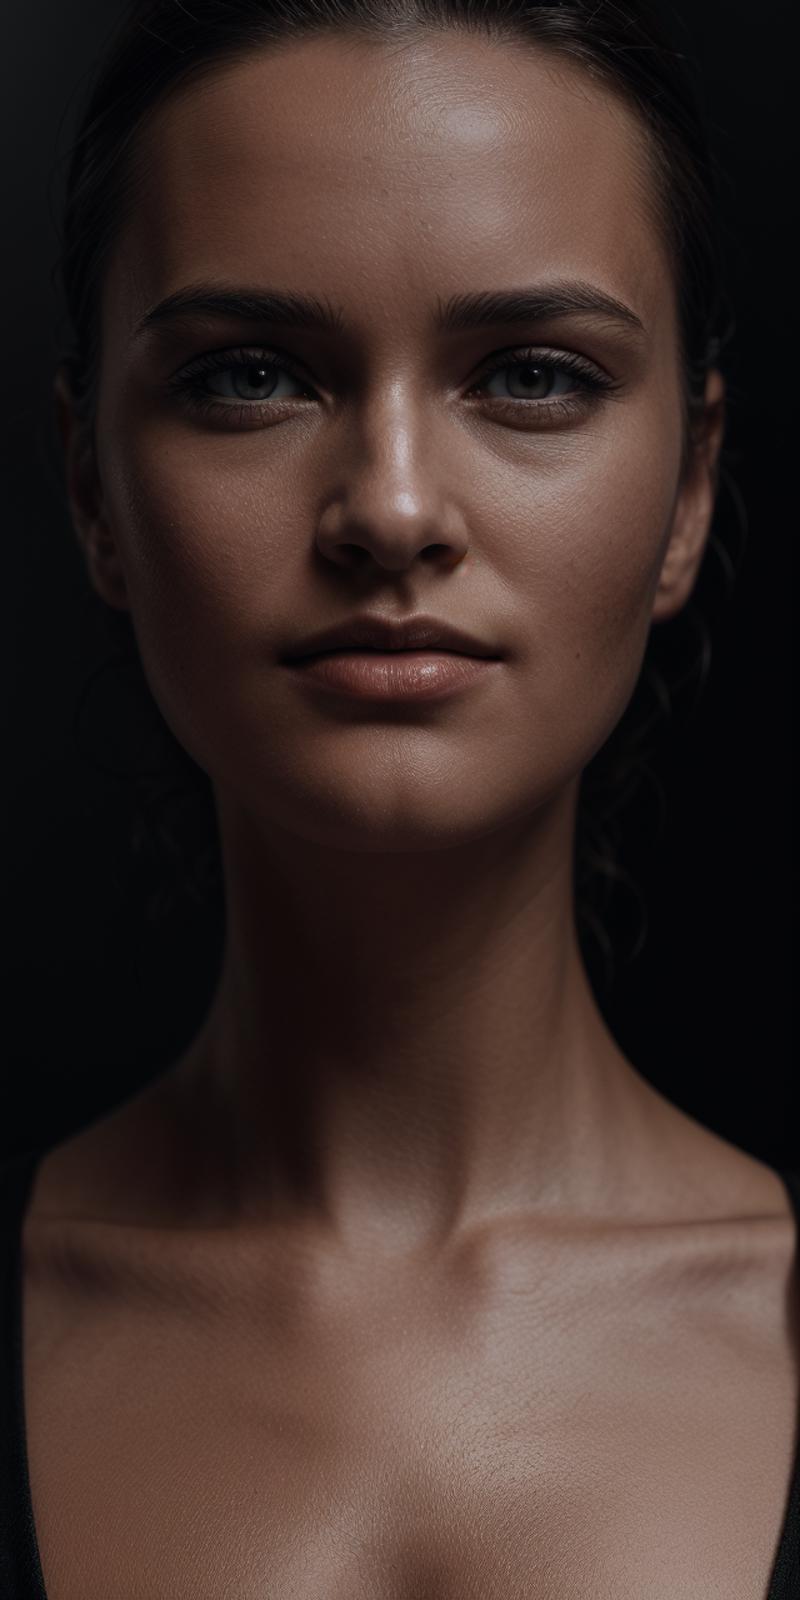 AI model image by Alyila